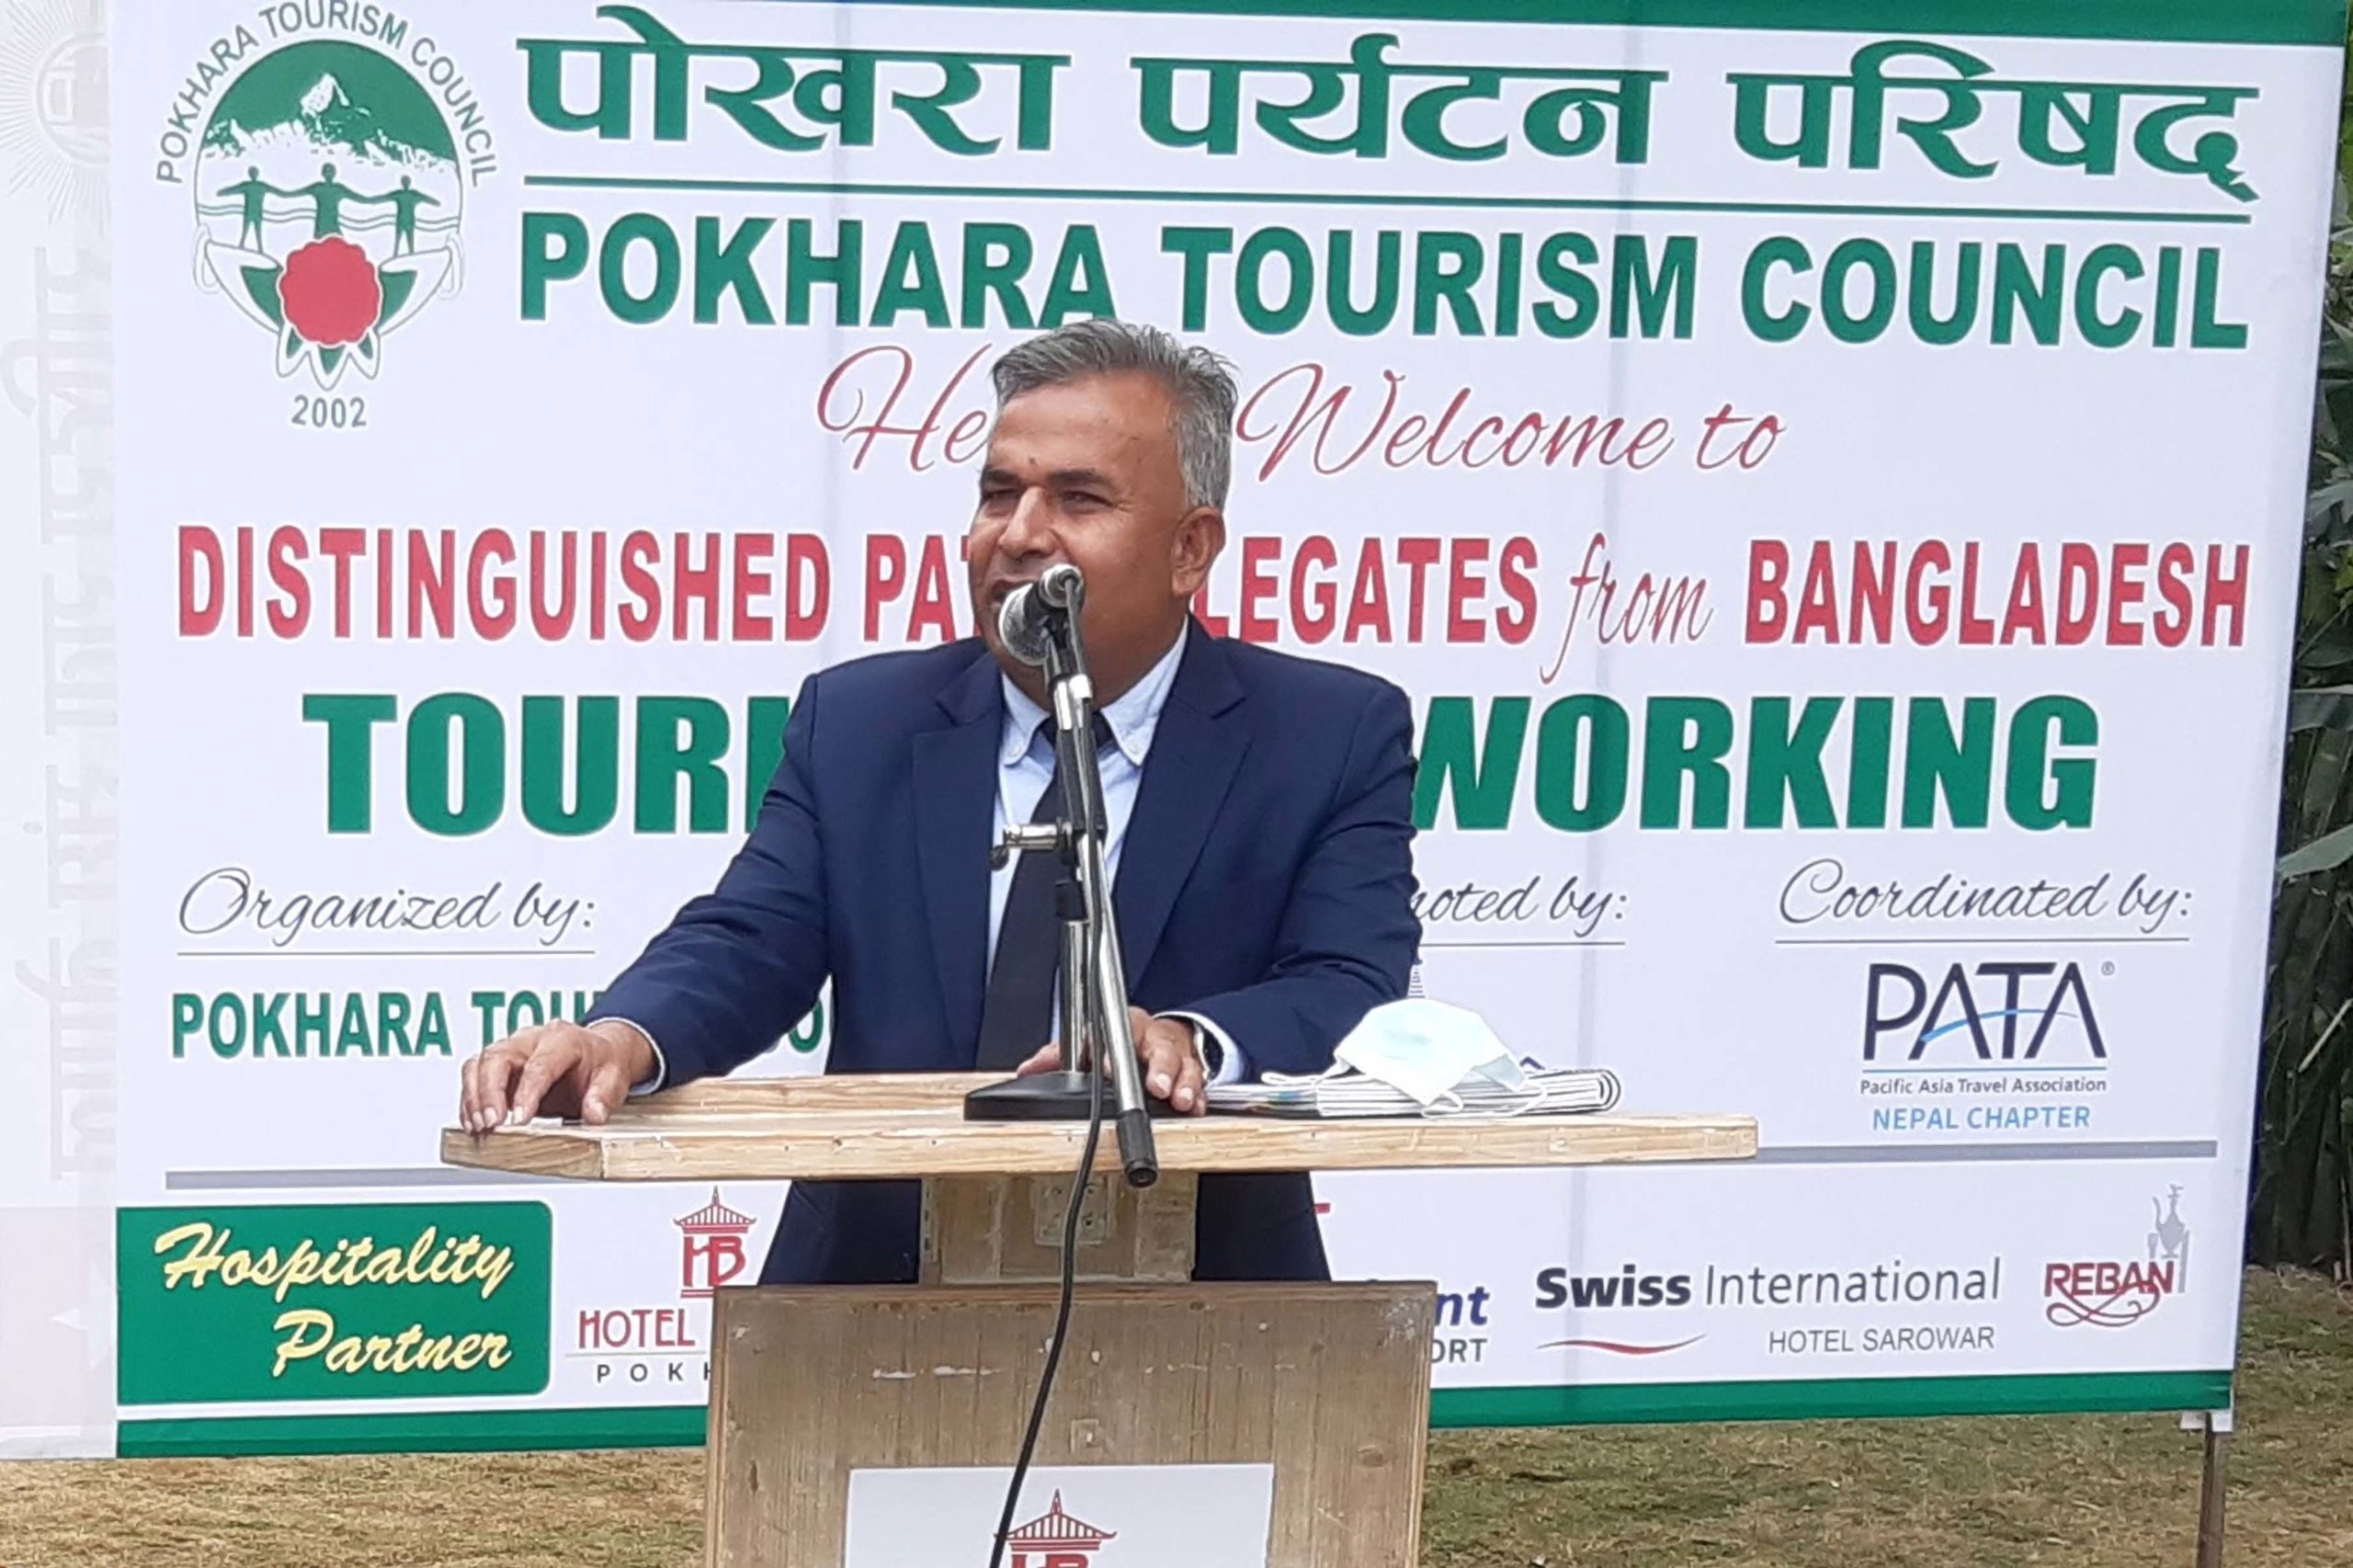 Tourism partnership between Nepal, Bangladesh stressed